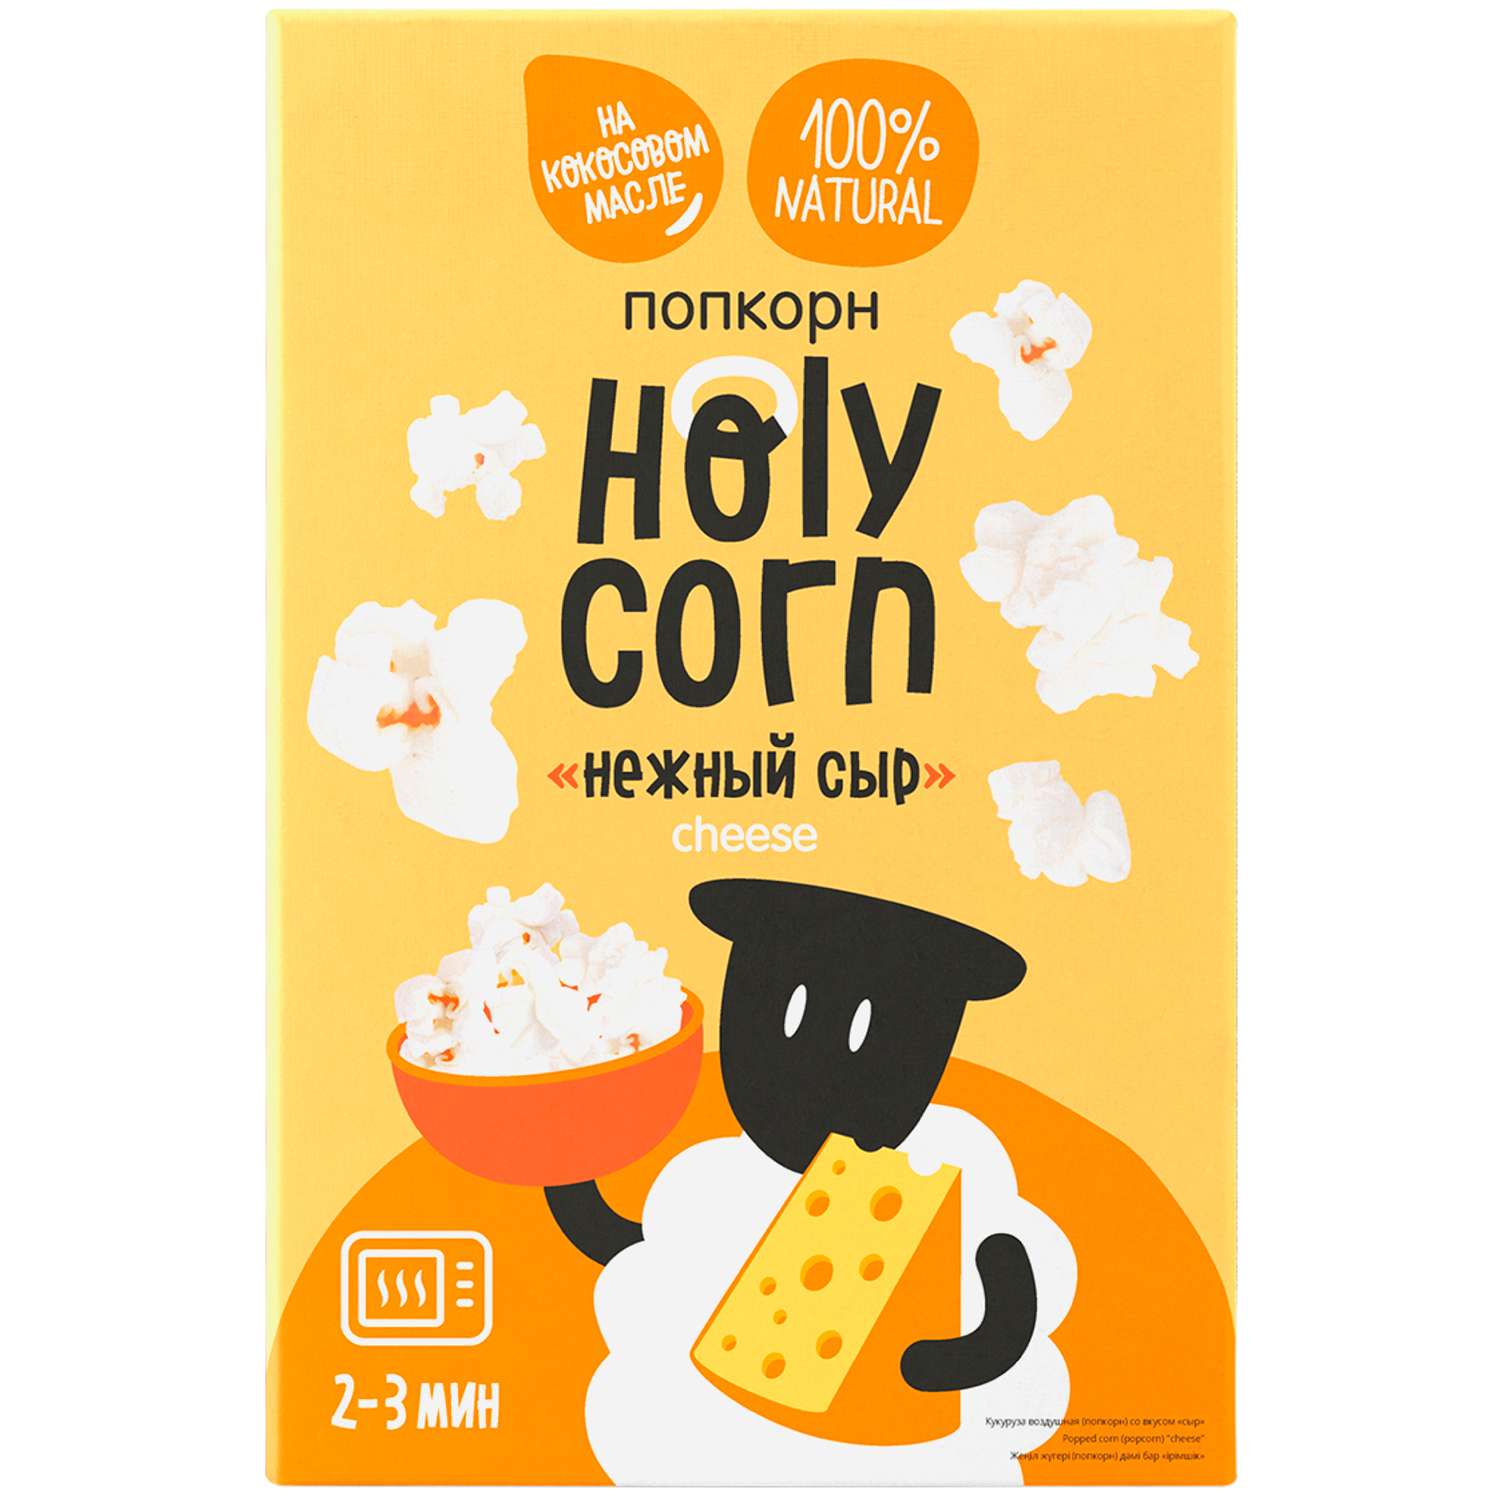 Попкорн Holy Corn СВЧ нежный сыр70г - фото 1